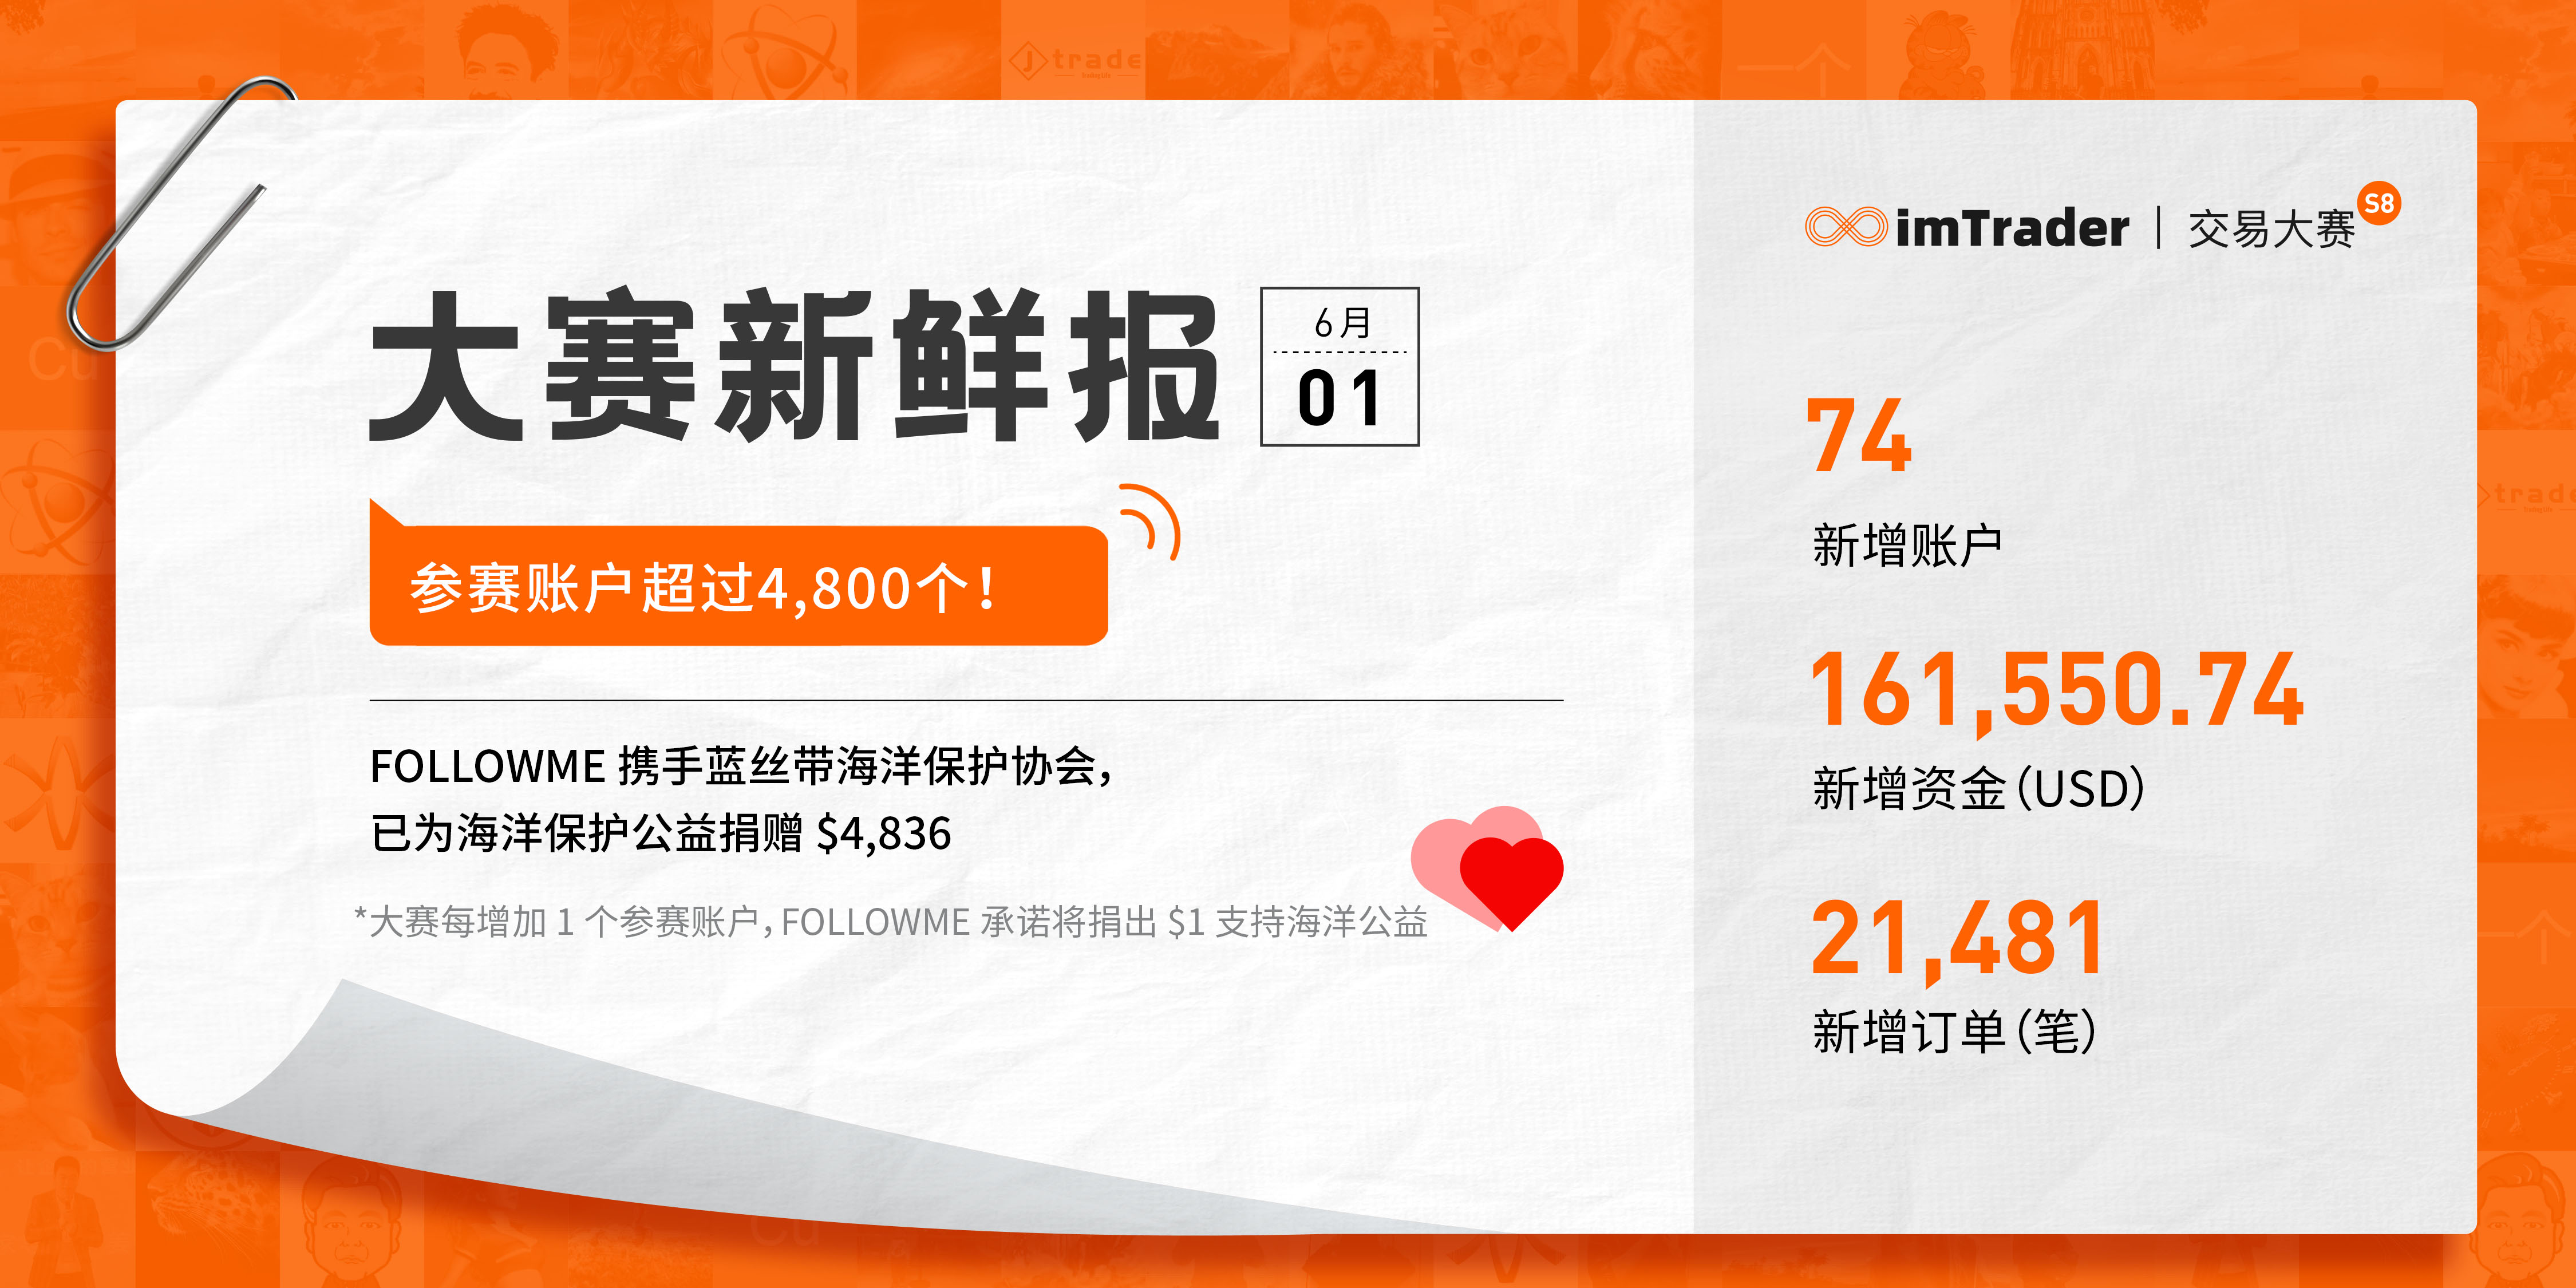 6月1日大赛新鲜报丨参赛账户超过 4,800 个！